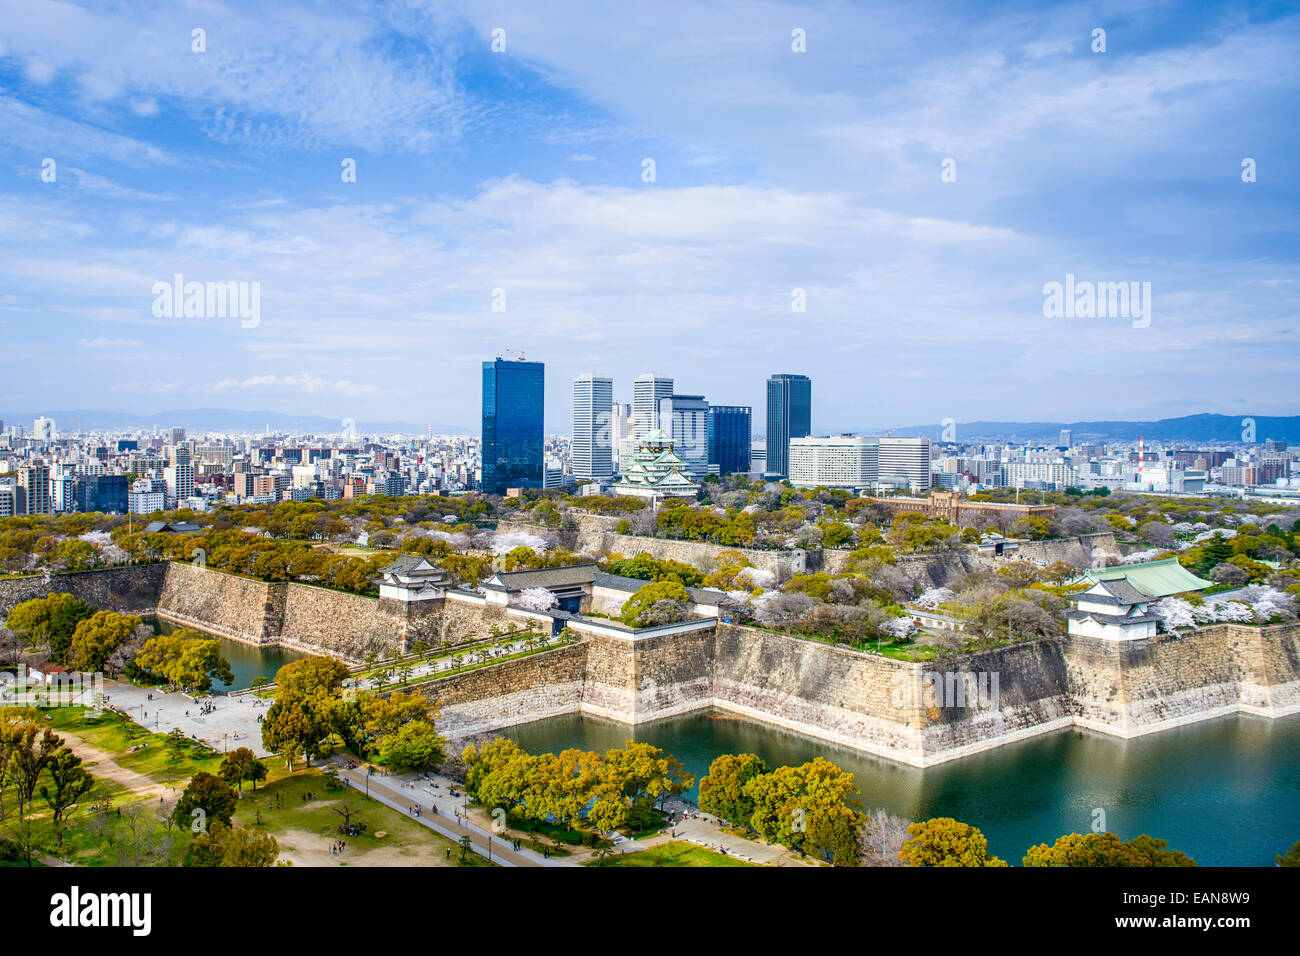 Osaka, Japan city skyline with Osaka Castle. Stock Photo